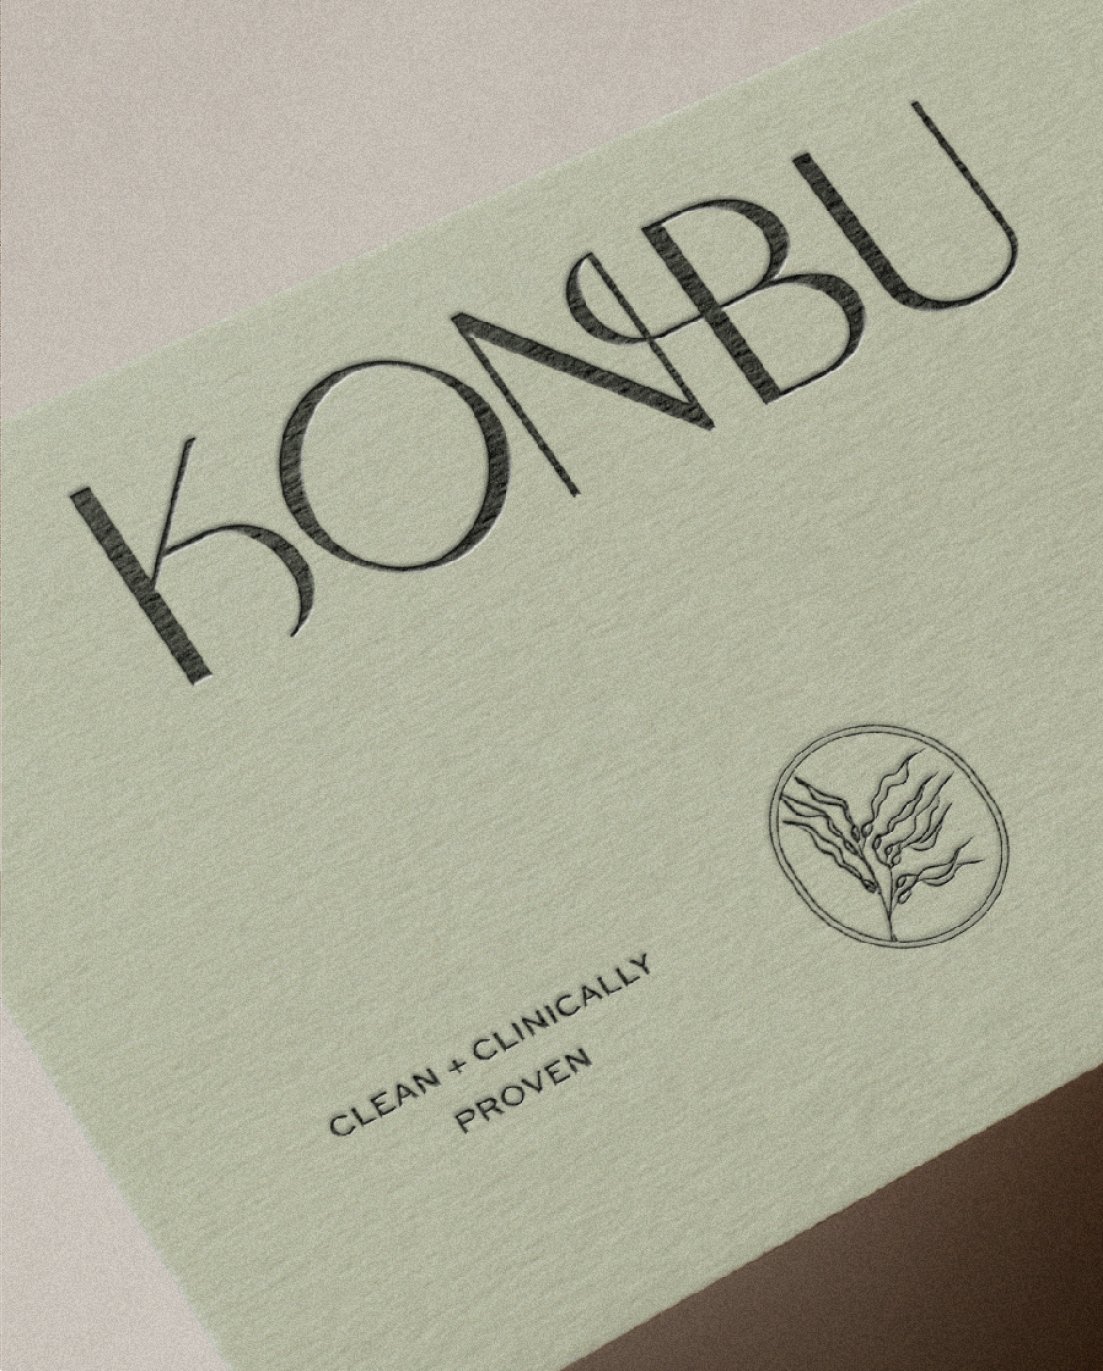   KONBU  by  Labels Studio  